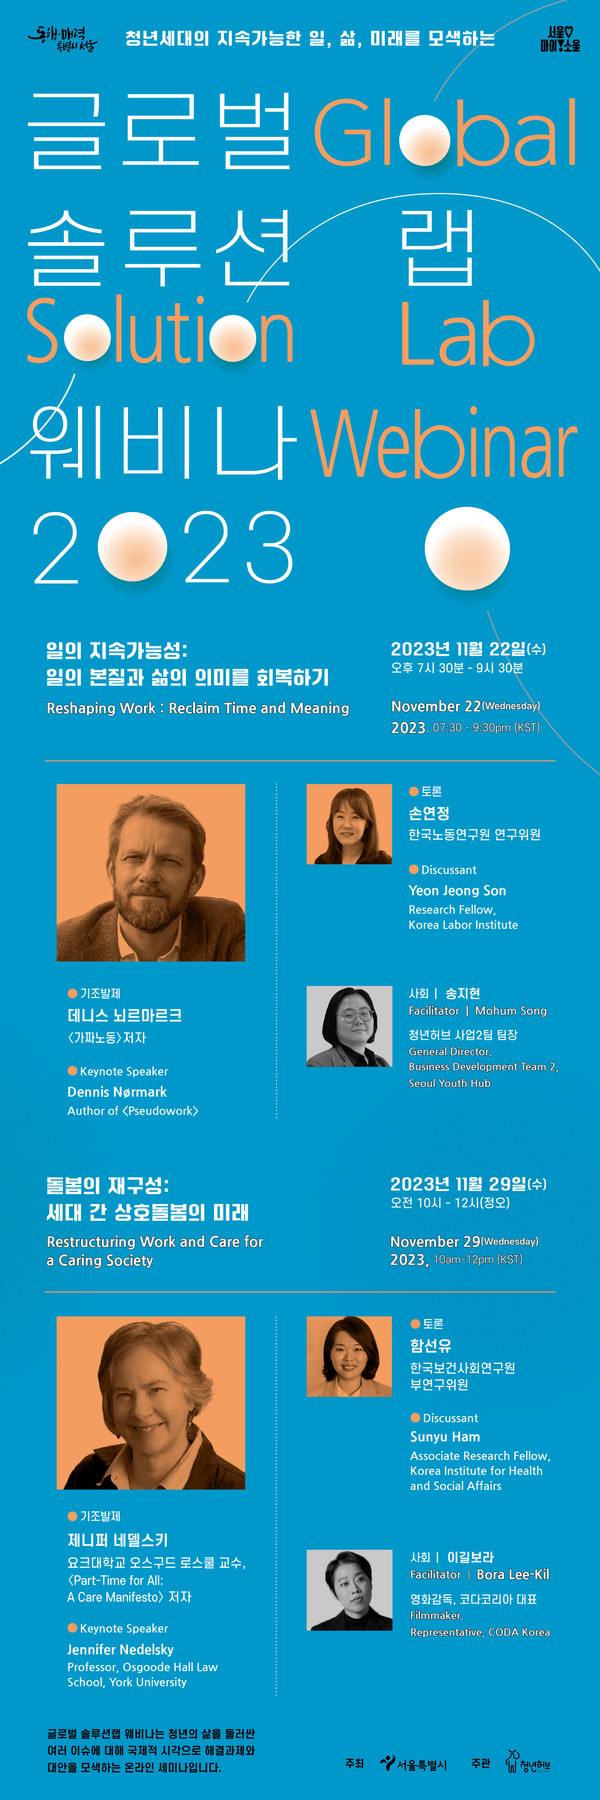 '2023 글로벌 솔루션 랩 웨비나' 3, 4회차 웹 포스터.